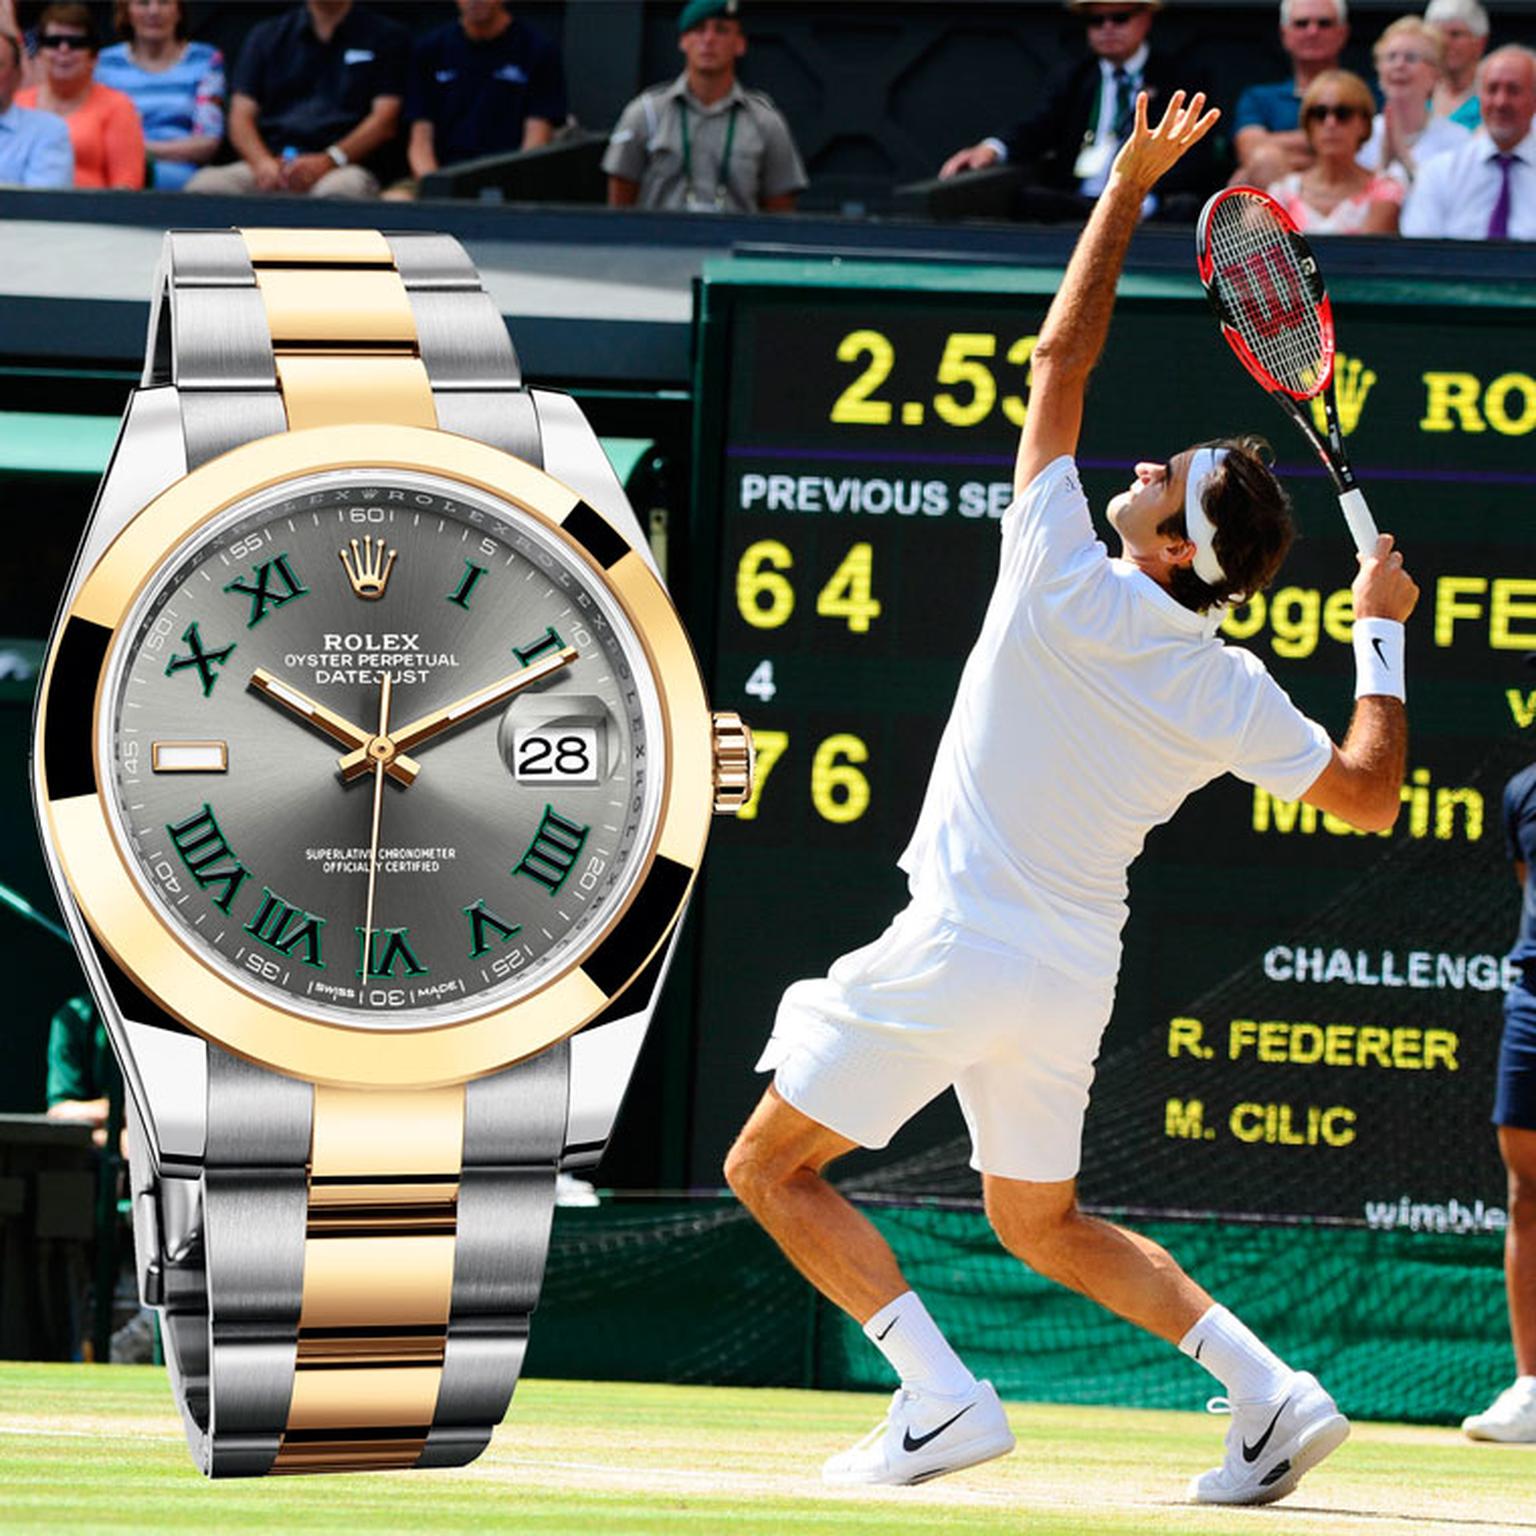 Rolex and Roger Federer